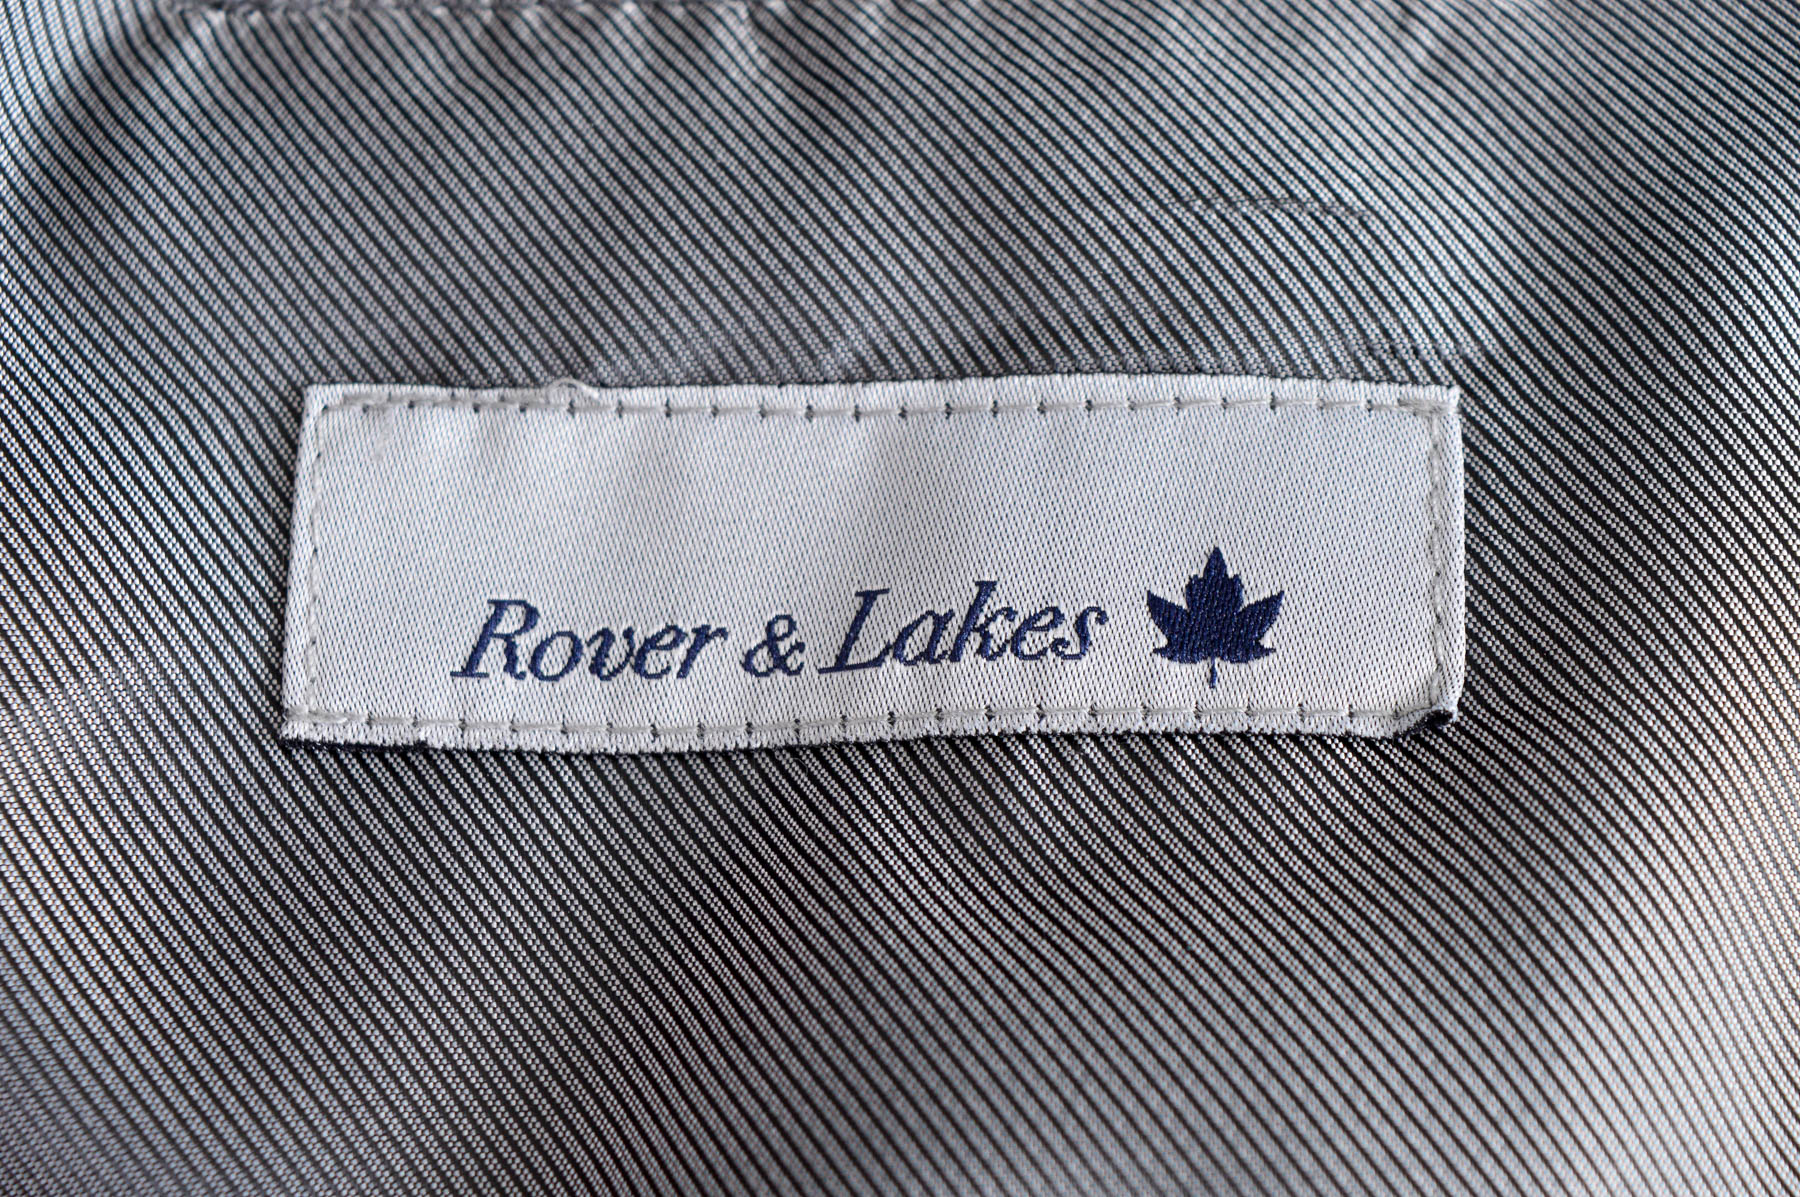 Sacou pentru bărbați - Rover & Lakes - 2